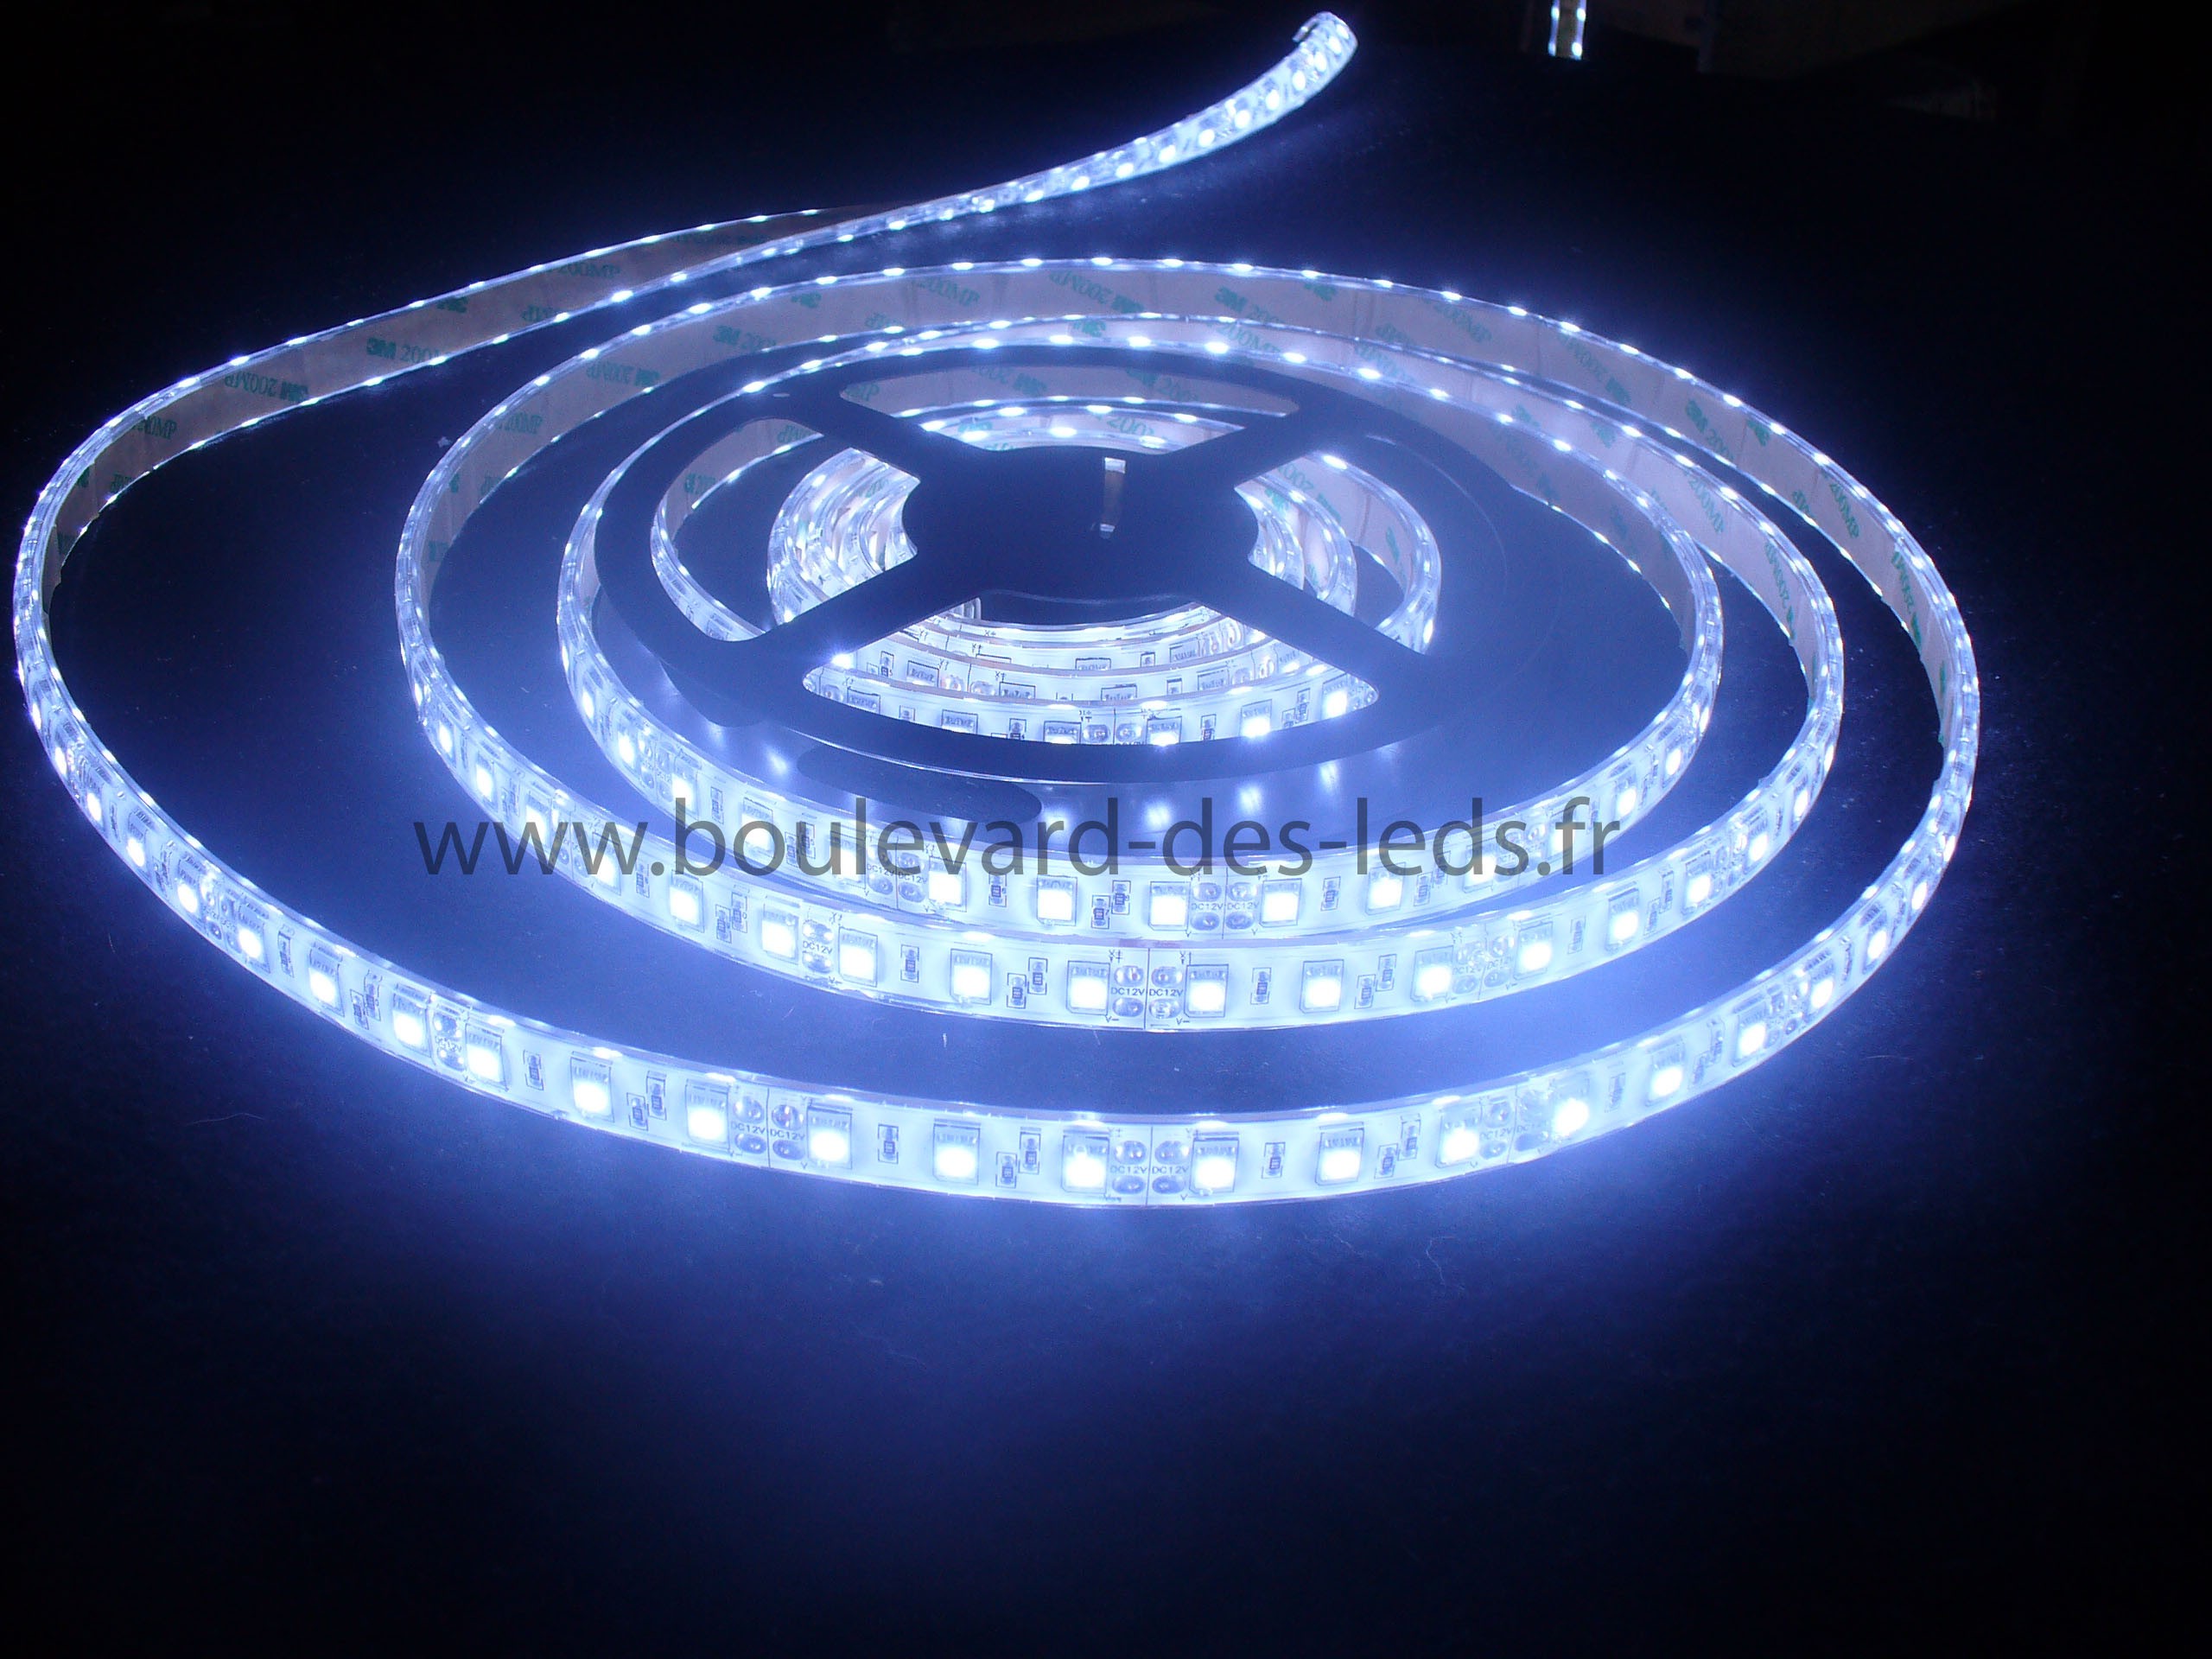 LED Eclairage Aquarium, LED RGB+W 24/7 Éclairage LED Aquarium avec